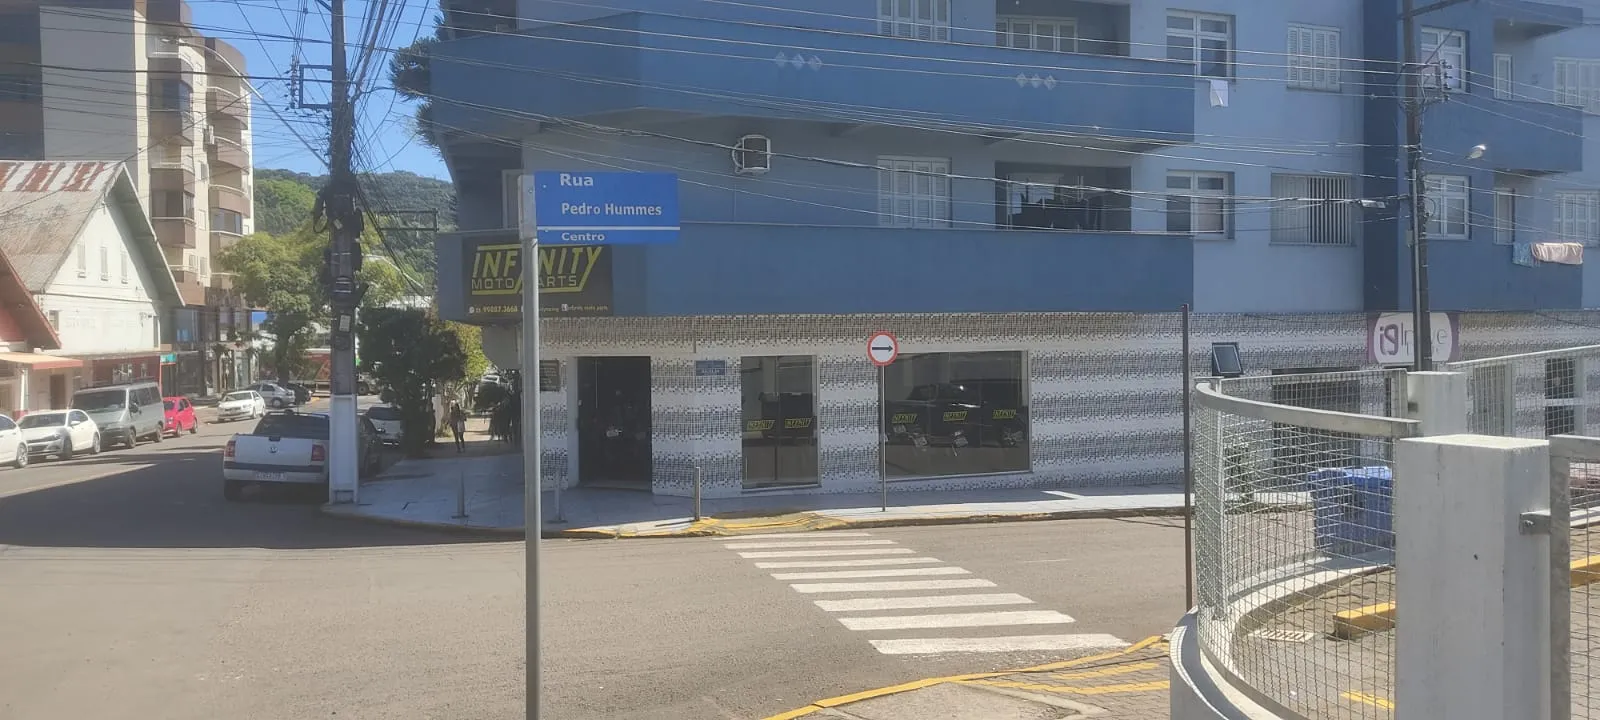 Departamento de trânsito implanta mão única na Rua Pedro Hummes